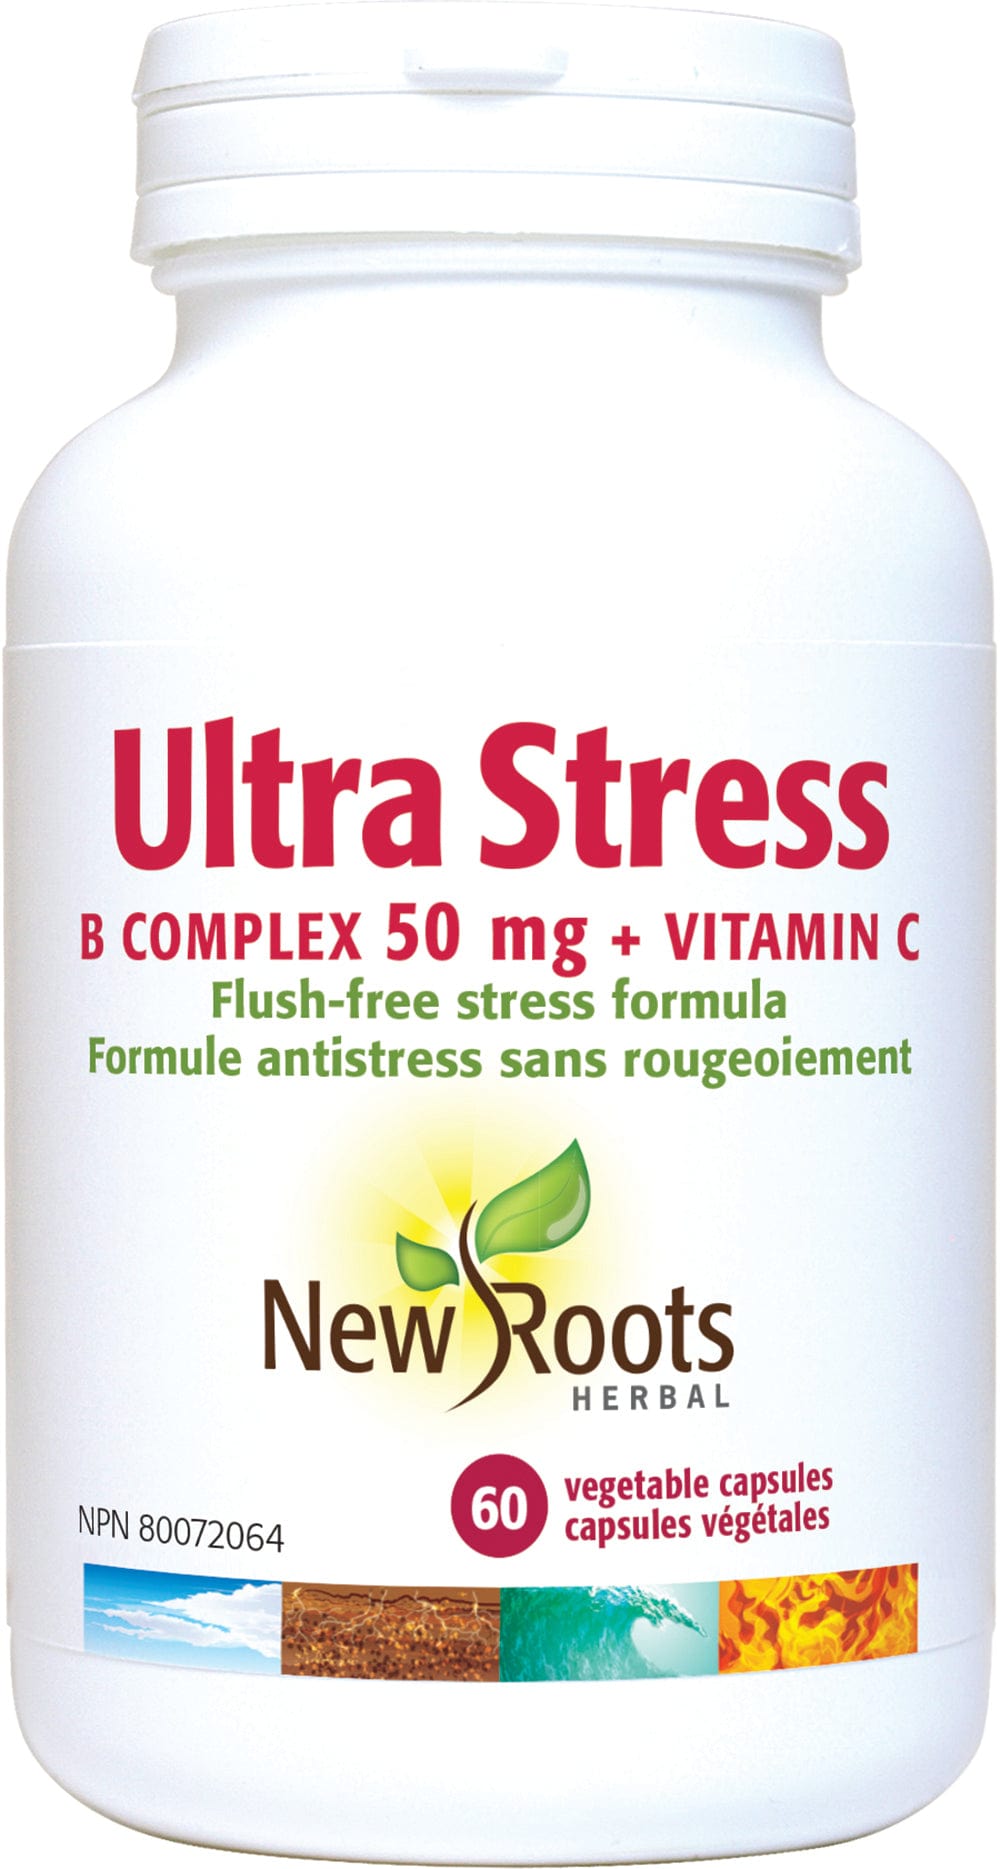 NEW ROOTS HERBAL Suppléments Ultra Stress B complex 50mg et vitamine C 60caps